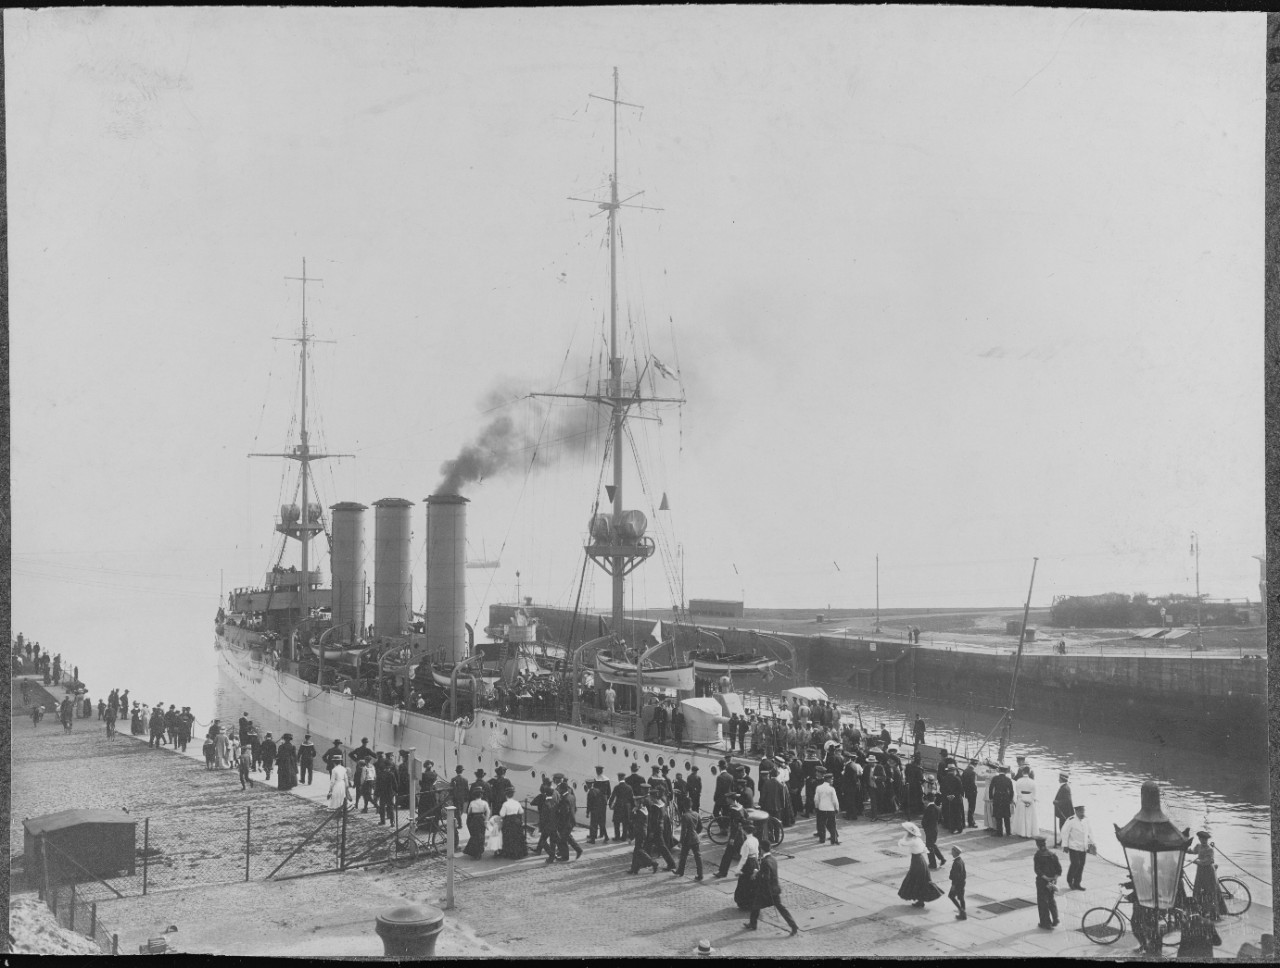 SMS DRESDEN at Wilhelmshaven in 1909.